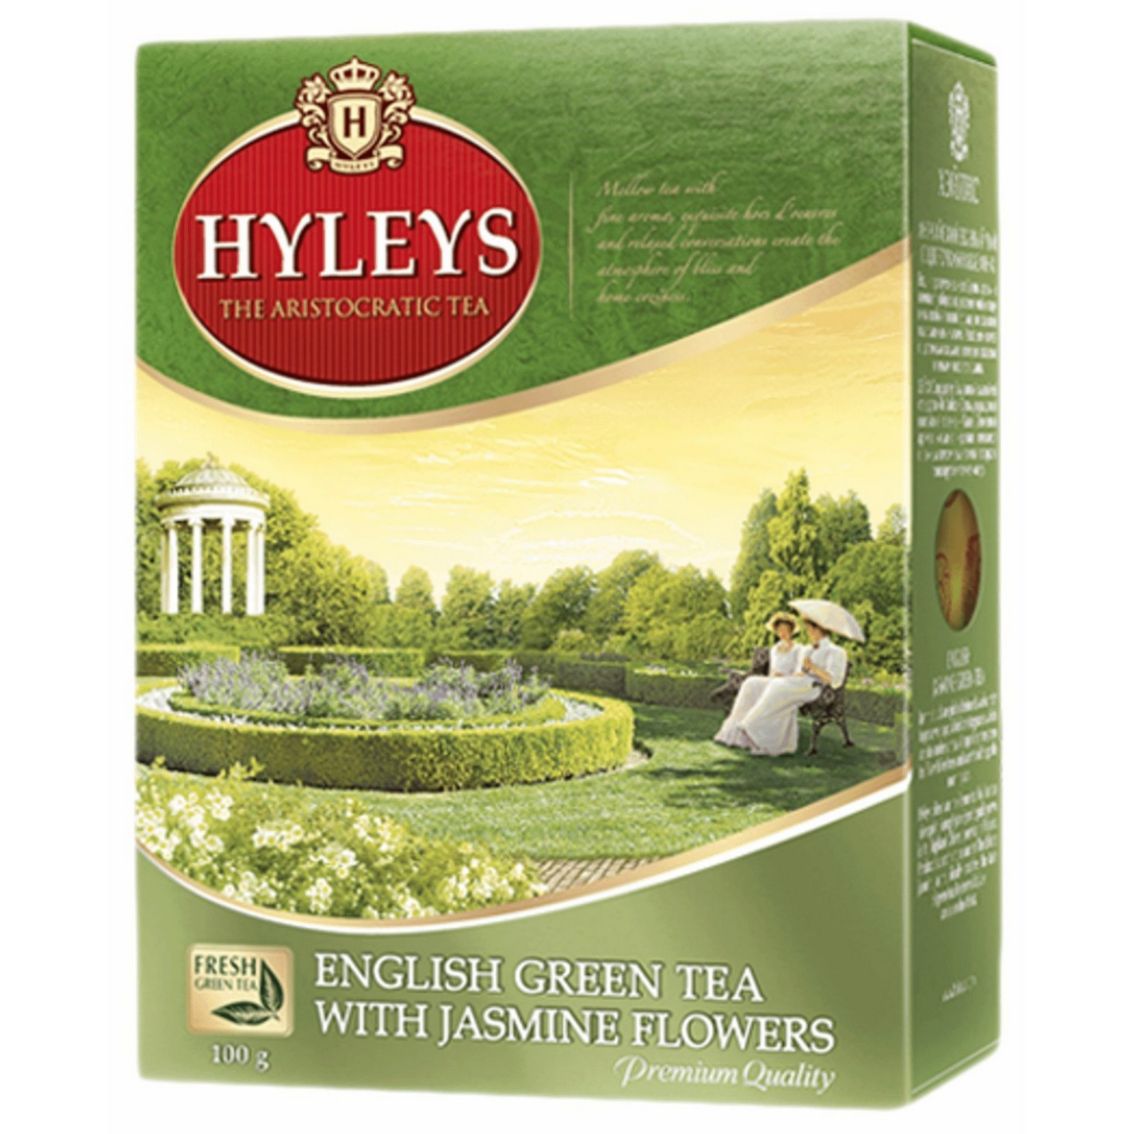 Чай Хэйлис английский зеленый с жасмином. Hyleys чай зеленый английский крупнолистовой 100г. Hyleys англ. C жасмином зеленый 100 гр.. Чай "Хэйлис" английский зеленый крупнолистовой. Чай hyleys купить